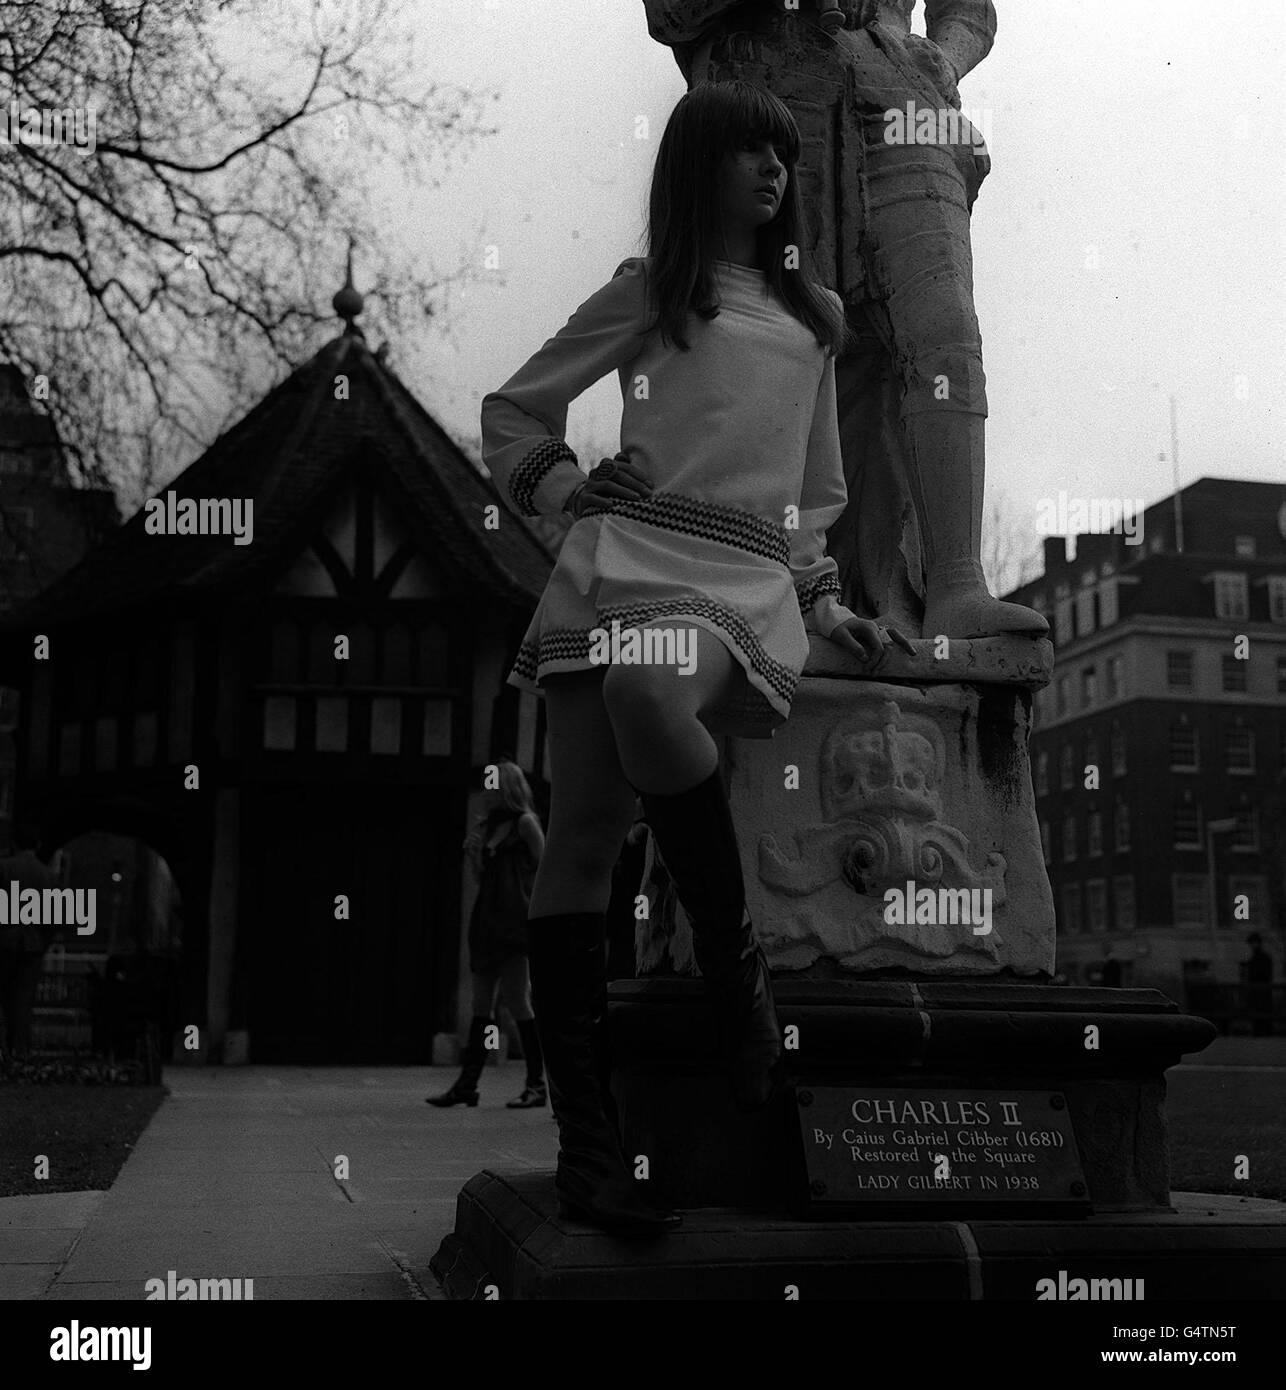 Chrissie Shrimpton, sœur du célèbre modesl Jean Shrimpton, à Soho Square à Londres, modélisant la robe de soirée tressée en soie crème d'Alice Pollock « Little Louis Angel », un article de sa ligne d'hiver. Banque D'Images